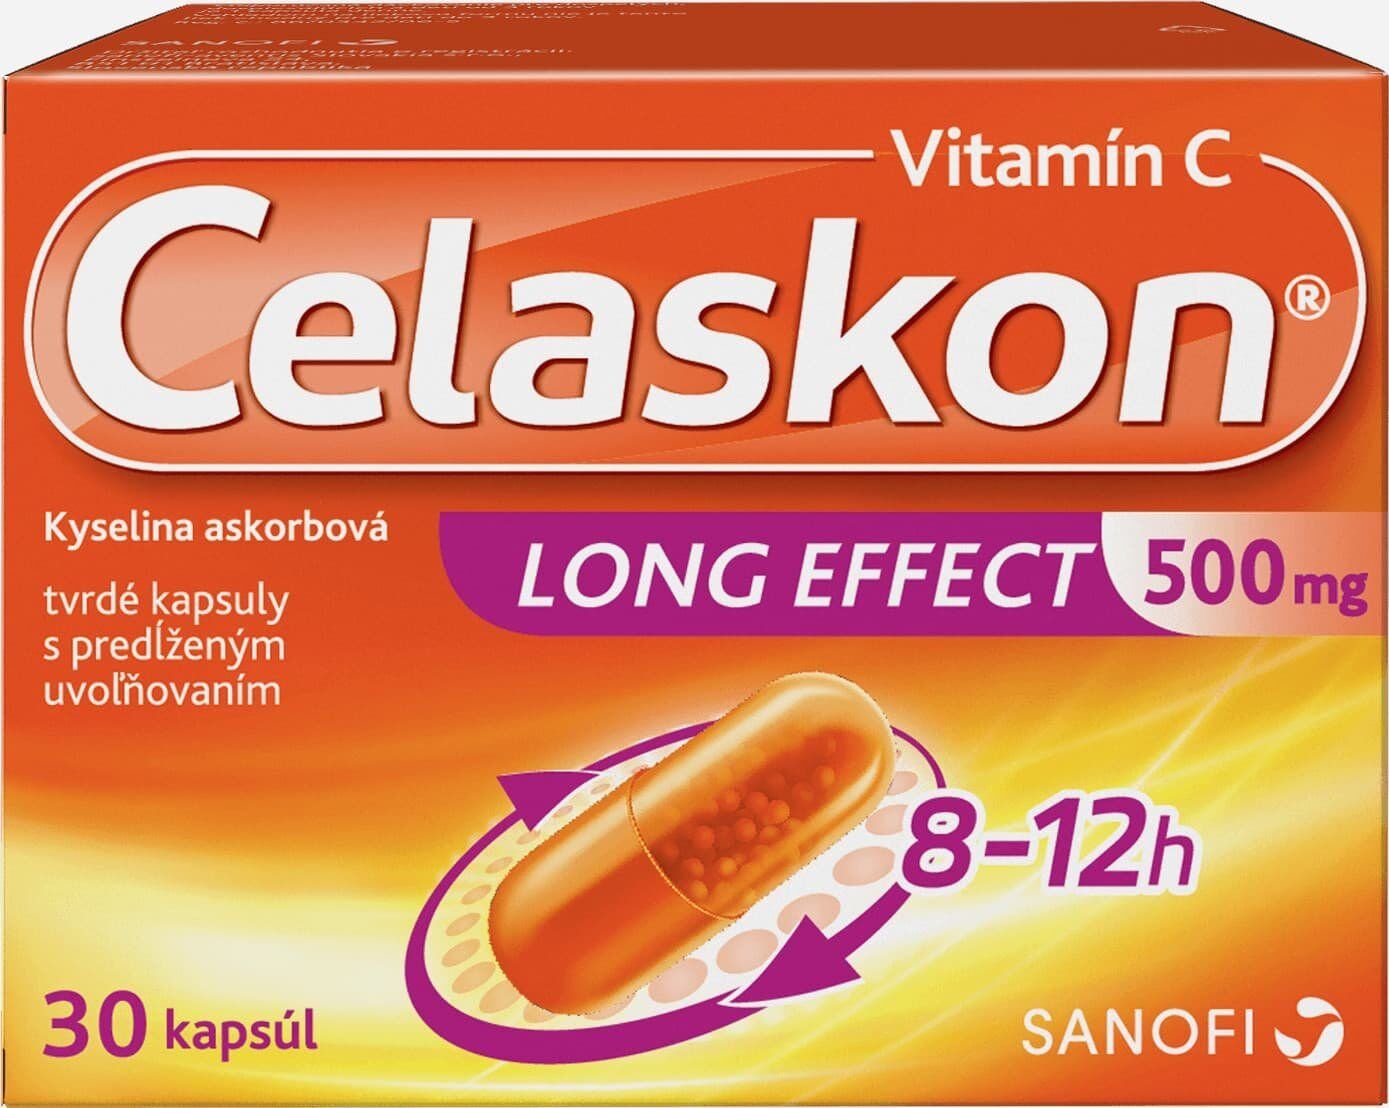 Celaskon Vitamín C Long effect 30 kapsúl